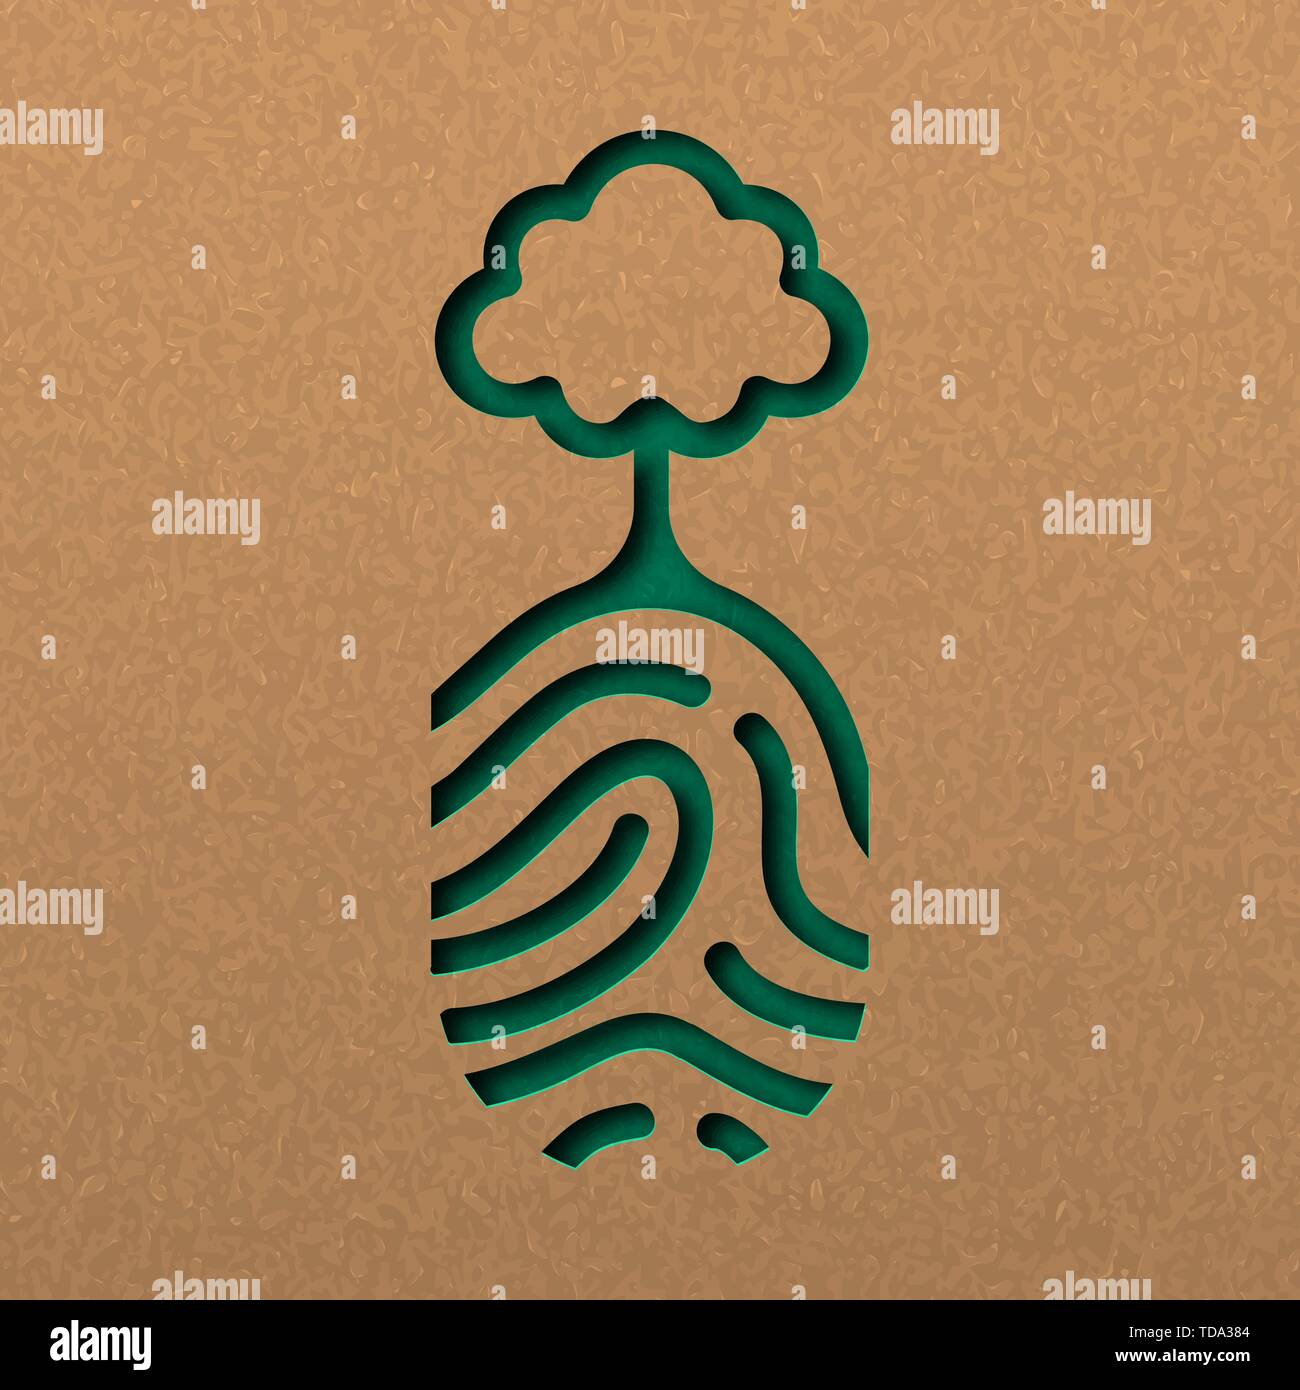 Papercut menschlichen Fingerabdruck mit Baum. Grüne Fingerabdruck ausschnitt Konzept in Recyclingpapier für die Natur. Stock Vektor